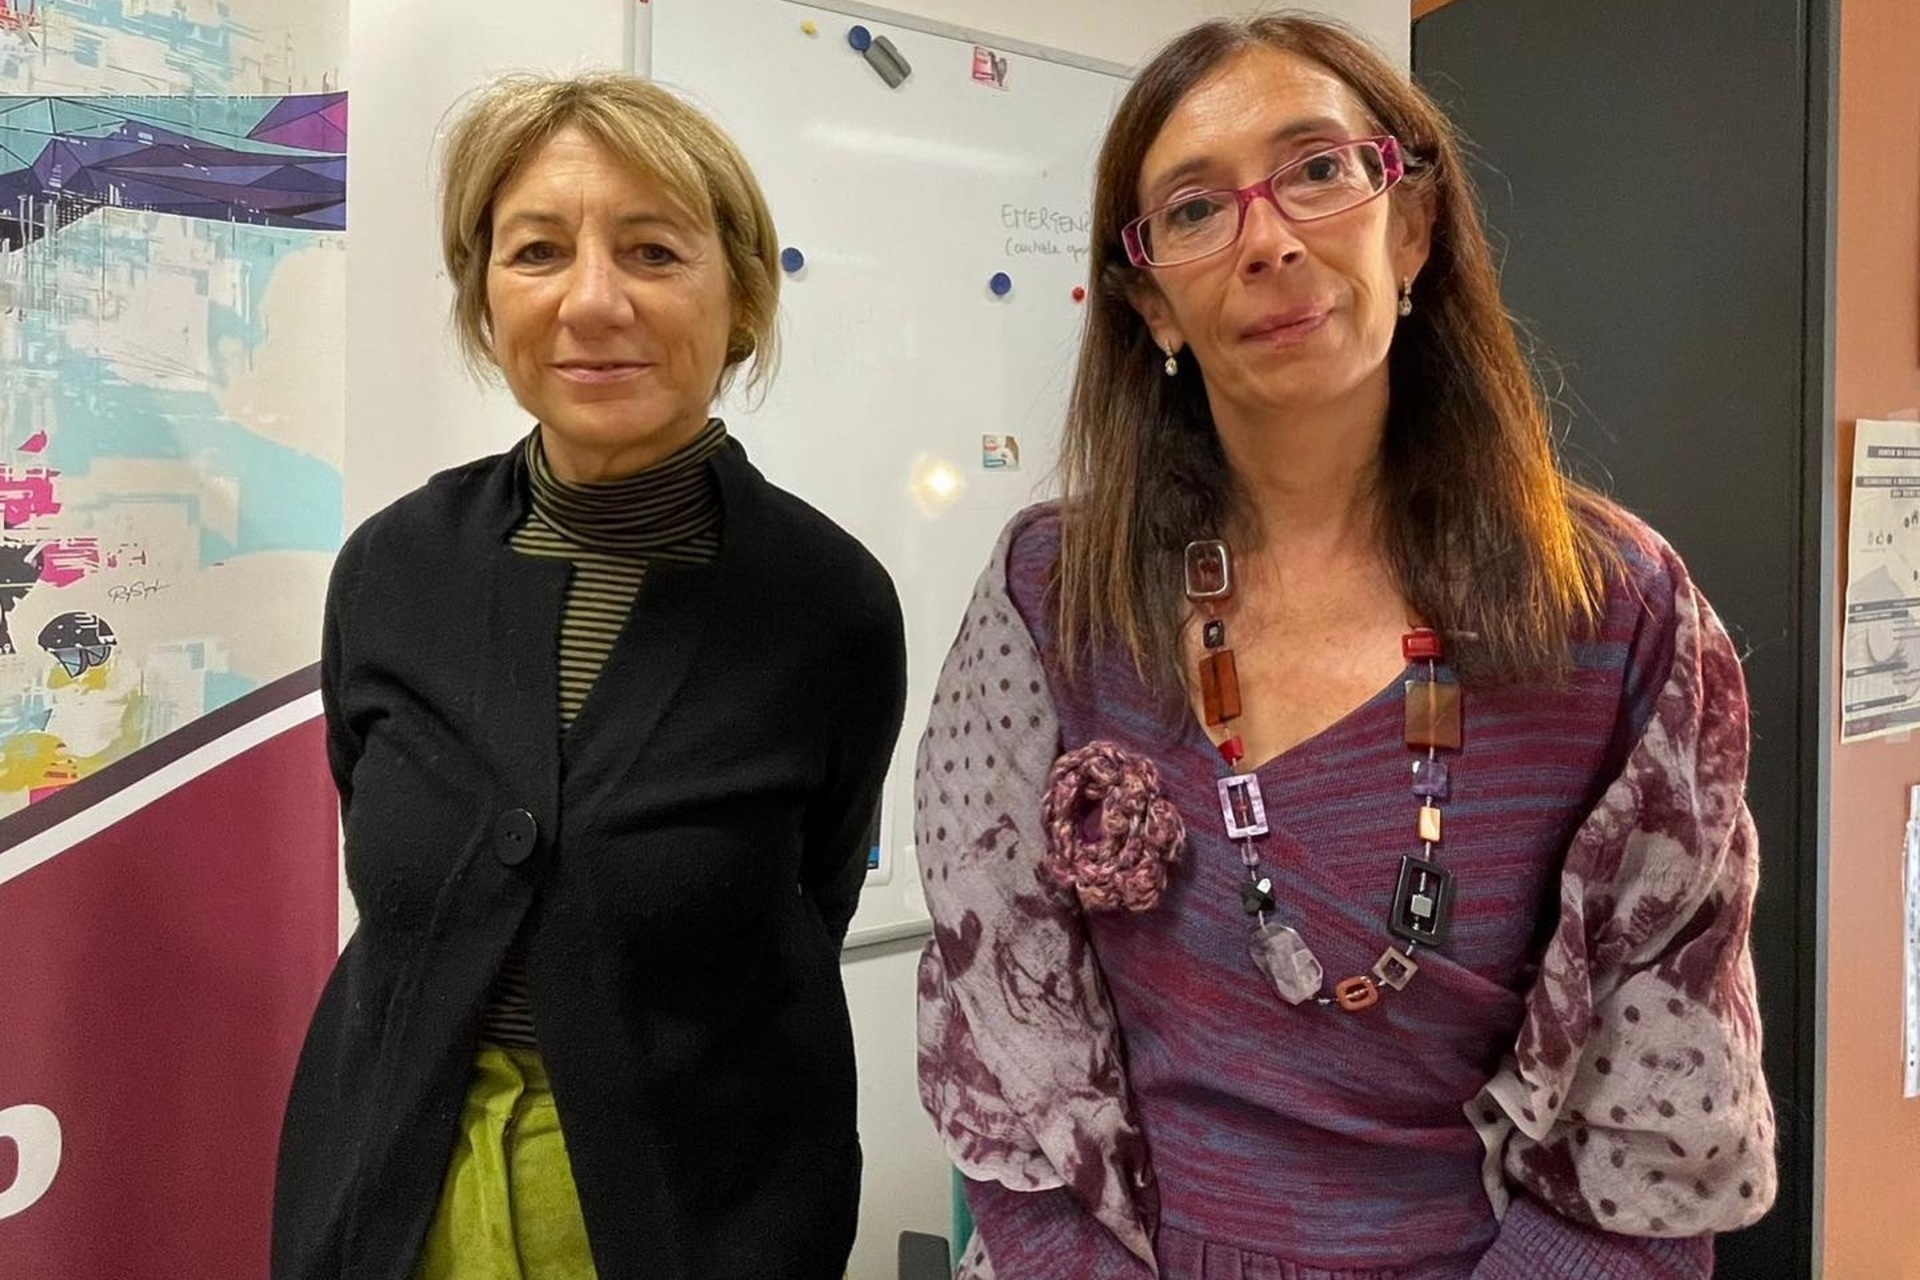 ArcheoVerso: Giovanna Barni, a CoopCulture innovációs és fejlesztési vezérigazgatója és Paola Buzi, a Római Sapienza Egyetem DigiLab Kutatóközpontjának igazgatója aláírta a kulturális projektet elindító megállapodást